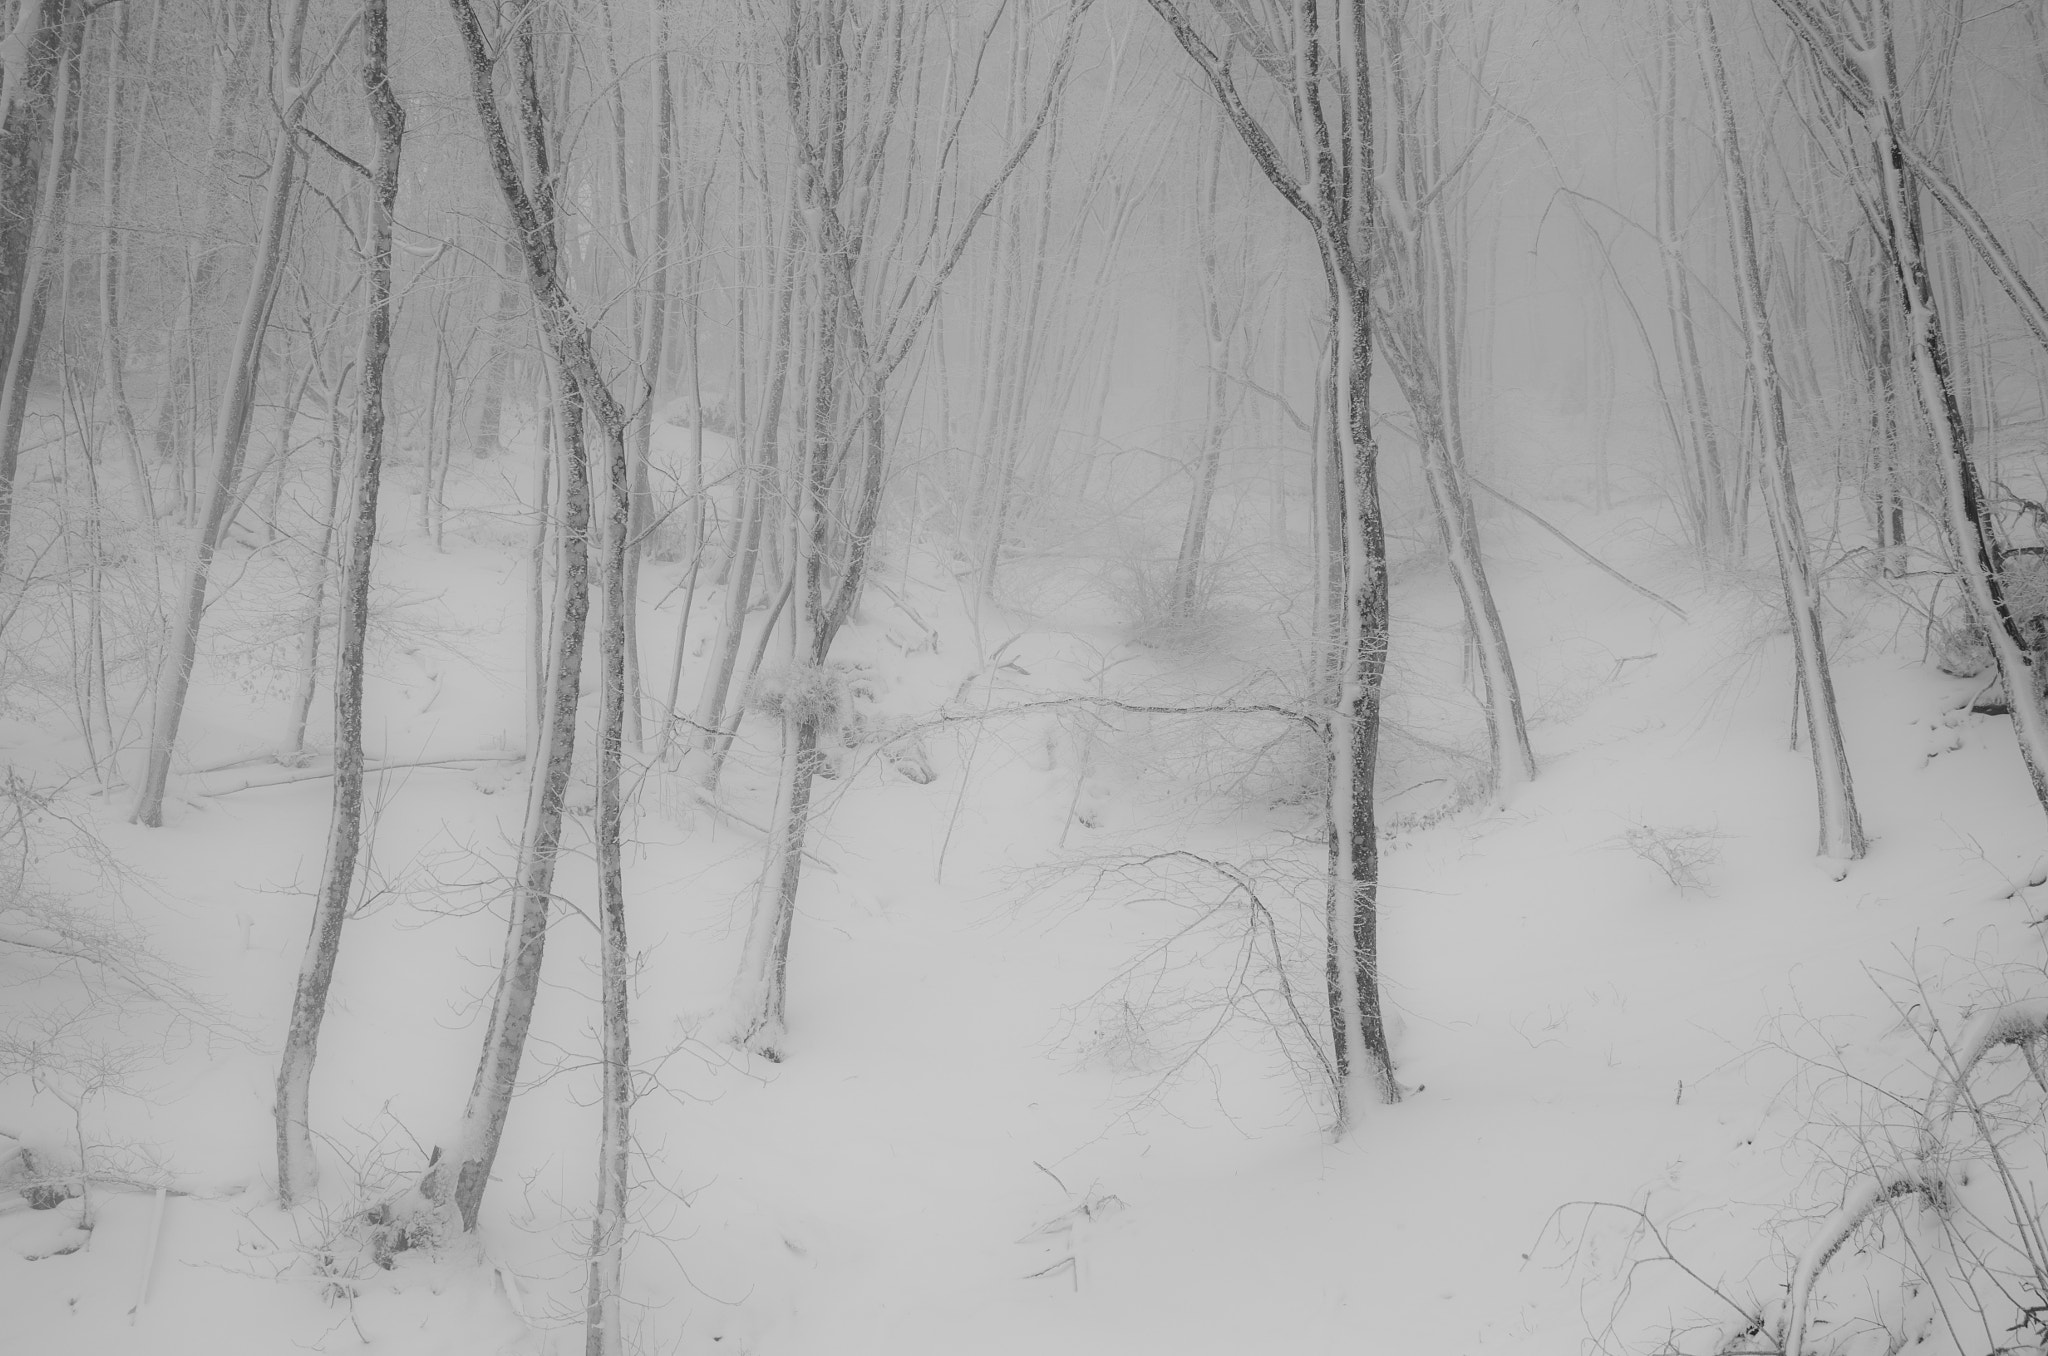 Leica X Vario sample photo. Snow and fog photography